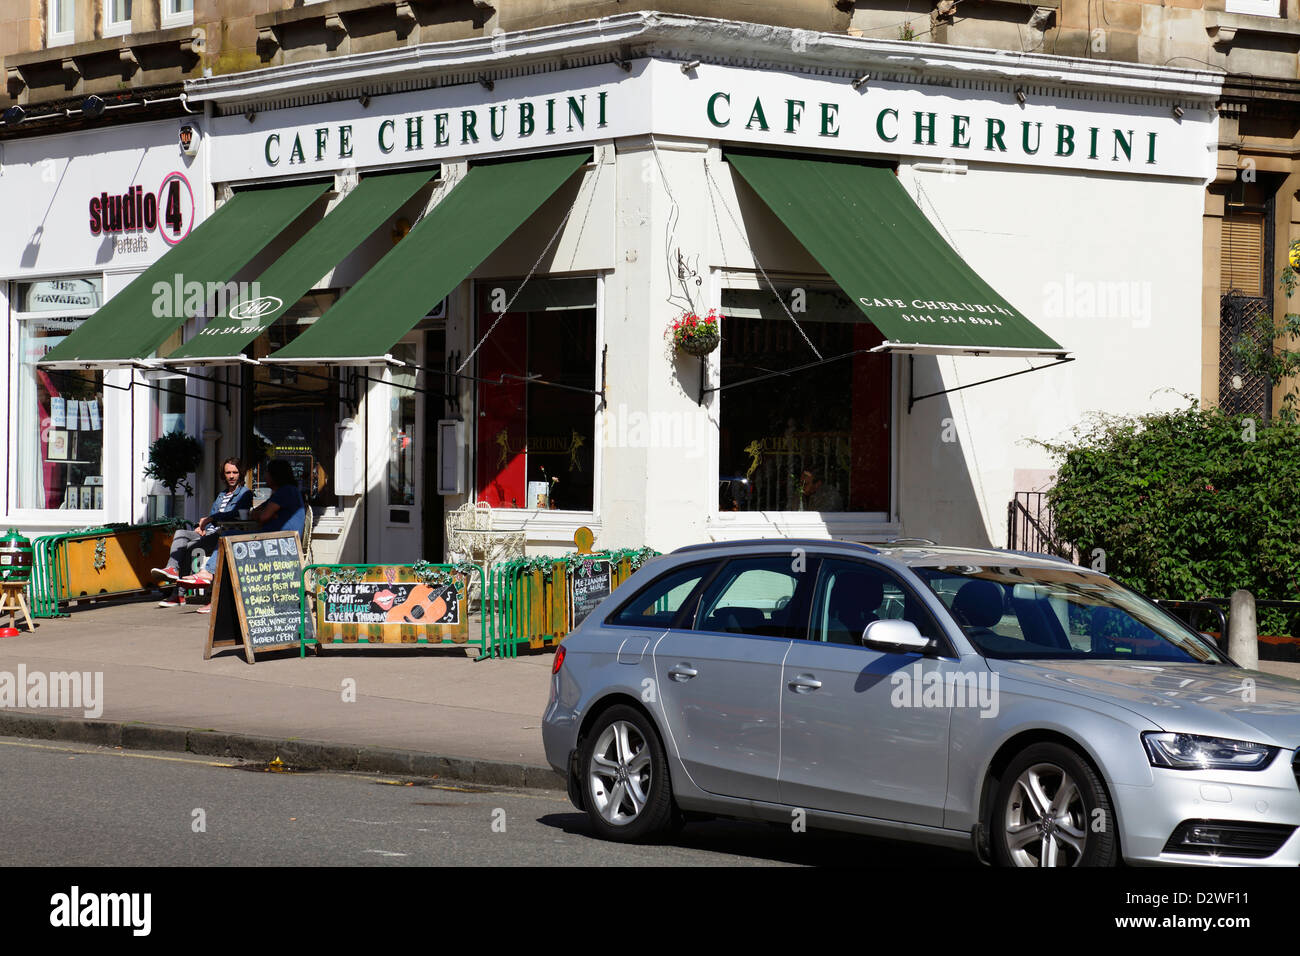 Cafe Cherubini una tradizionale caffetteria italiana su Great Western Road nel West End di Glasgow, Regno Unito Foto Stock